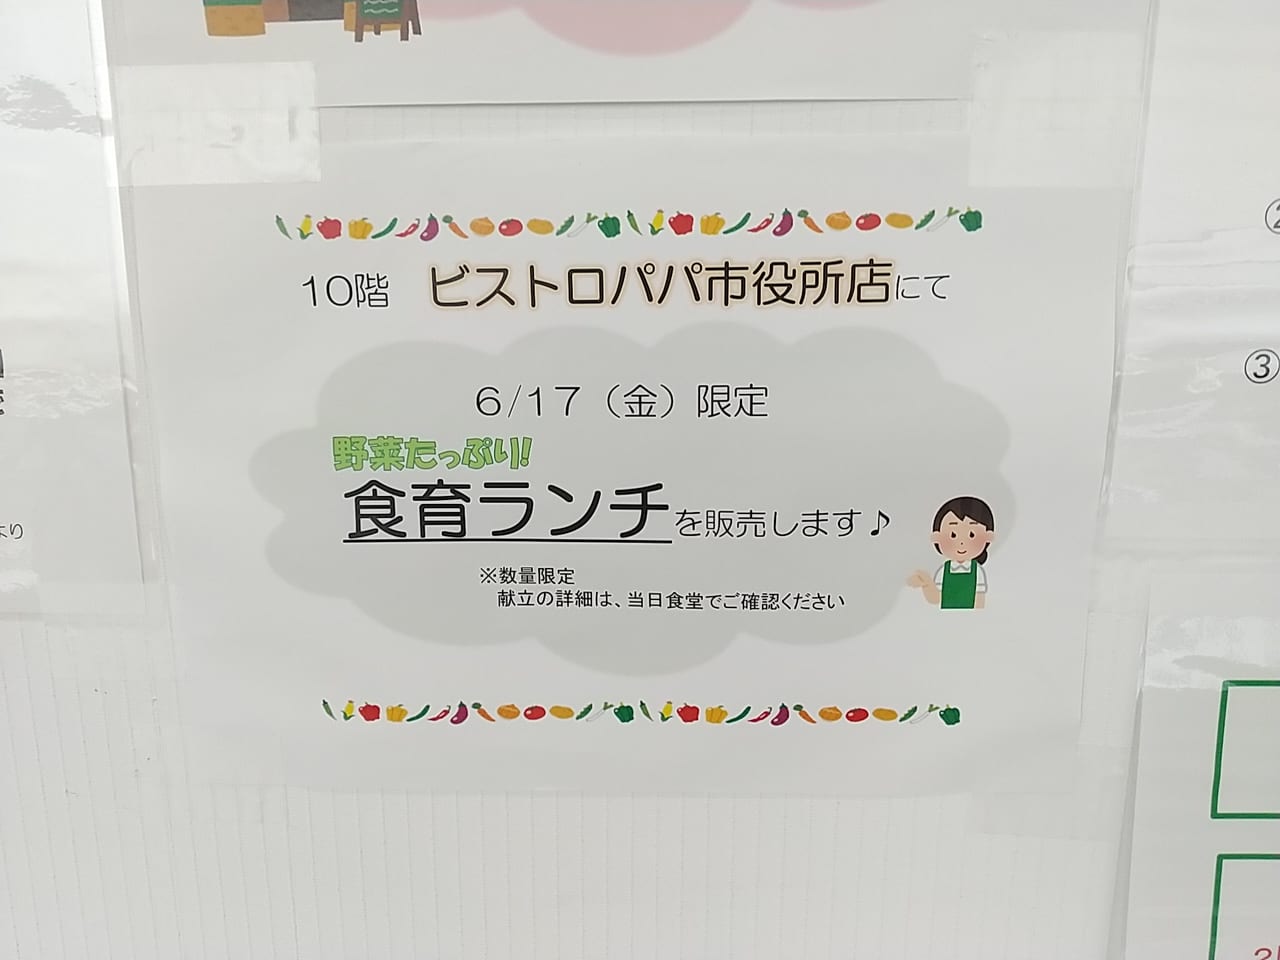 2022年度東広島市役所「食育展」関連イベント。6月17日「ビストロパパ市役所店」で限定ランチが販売！